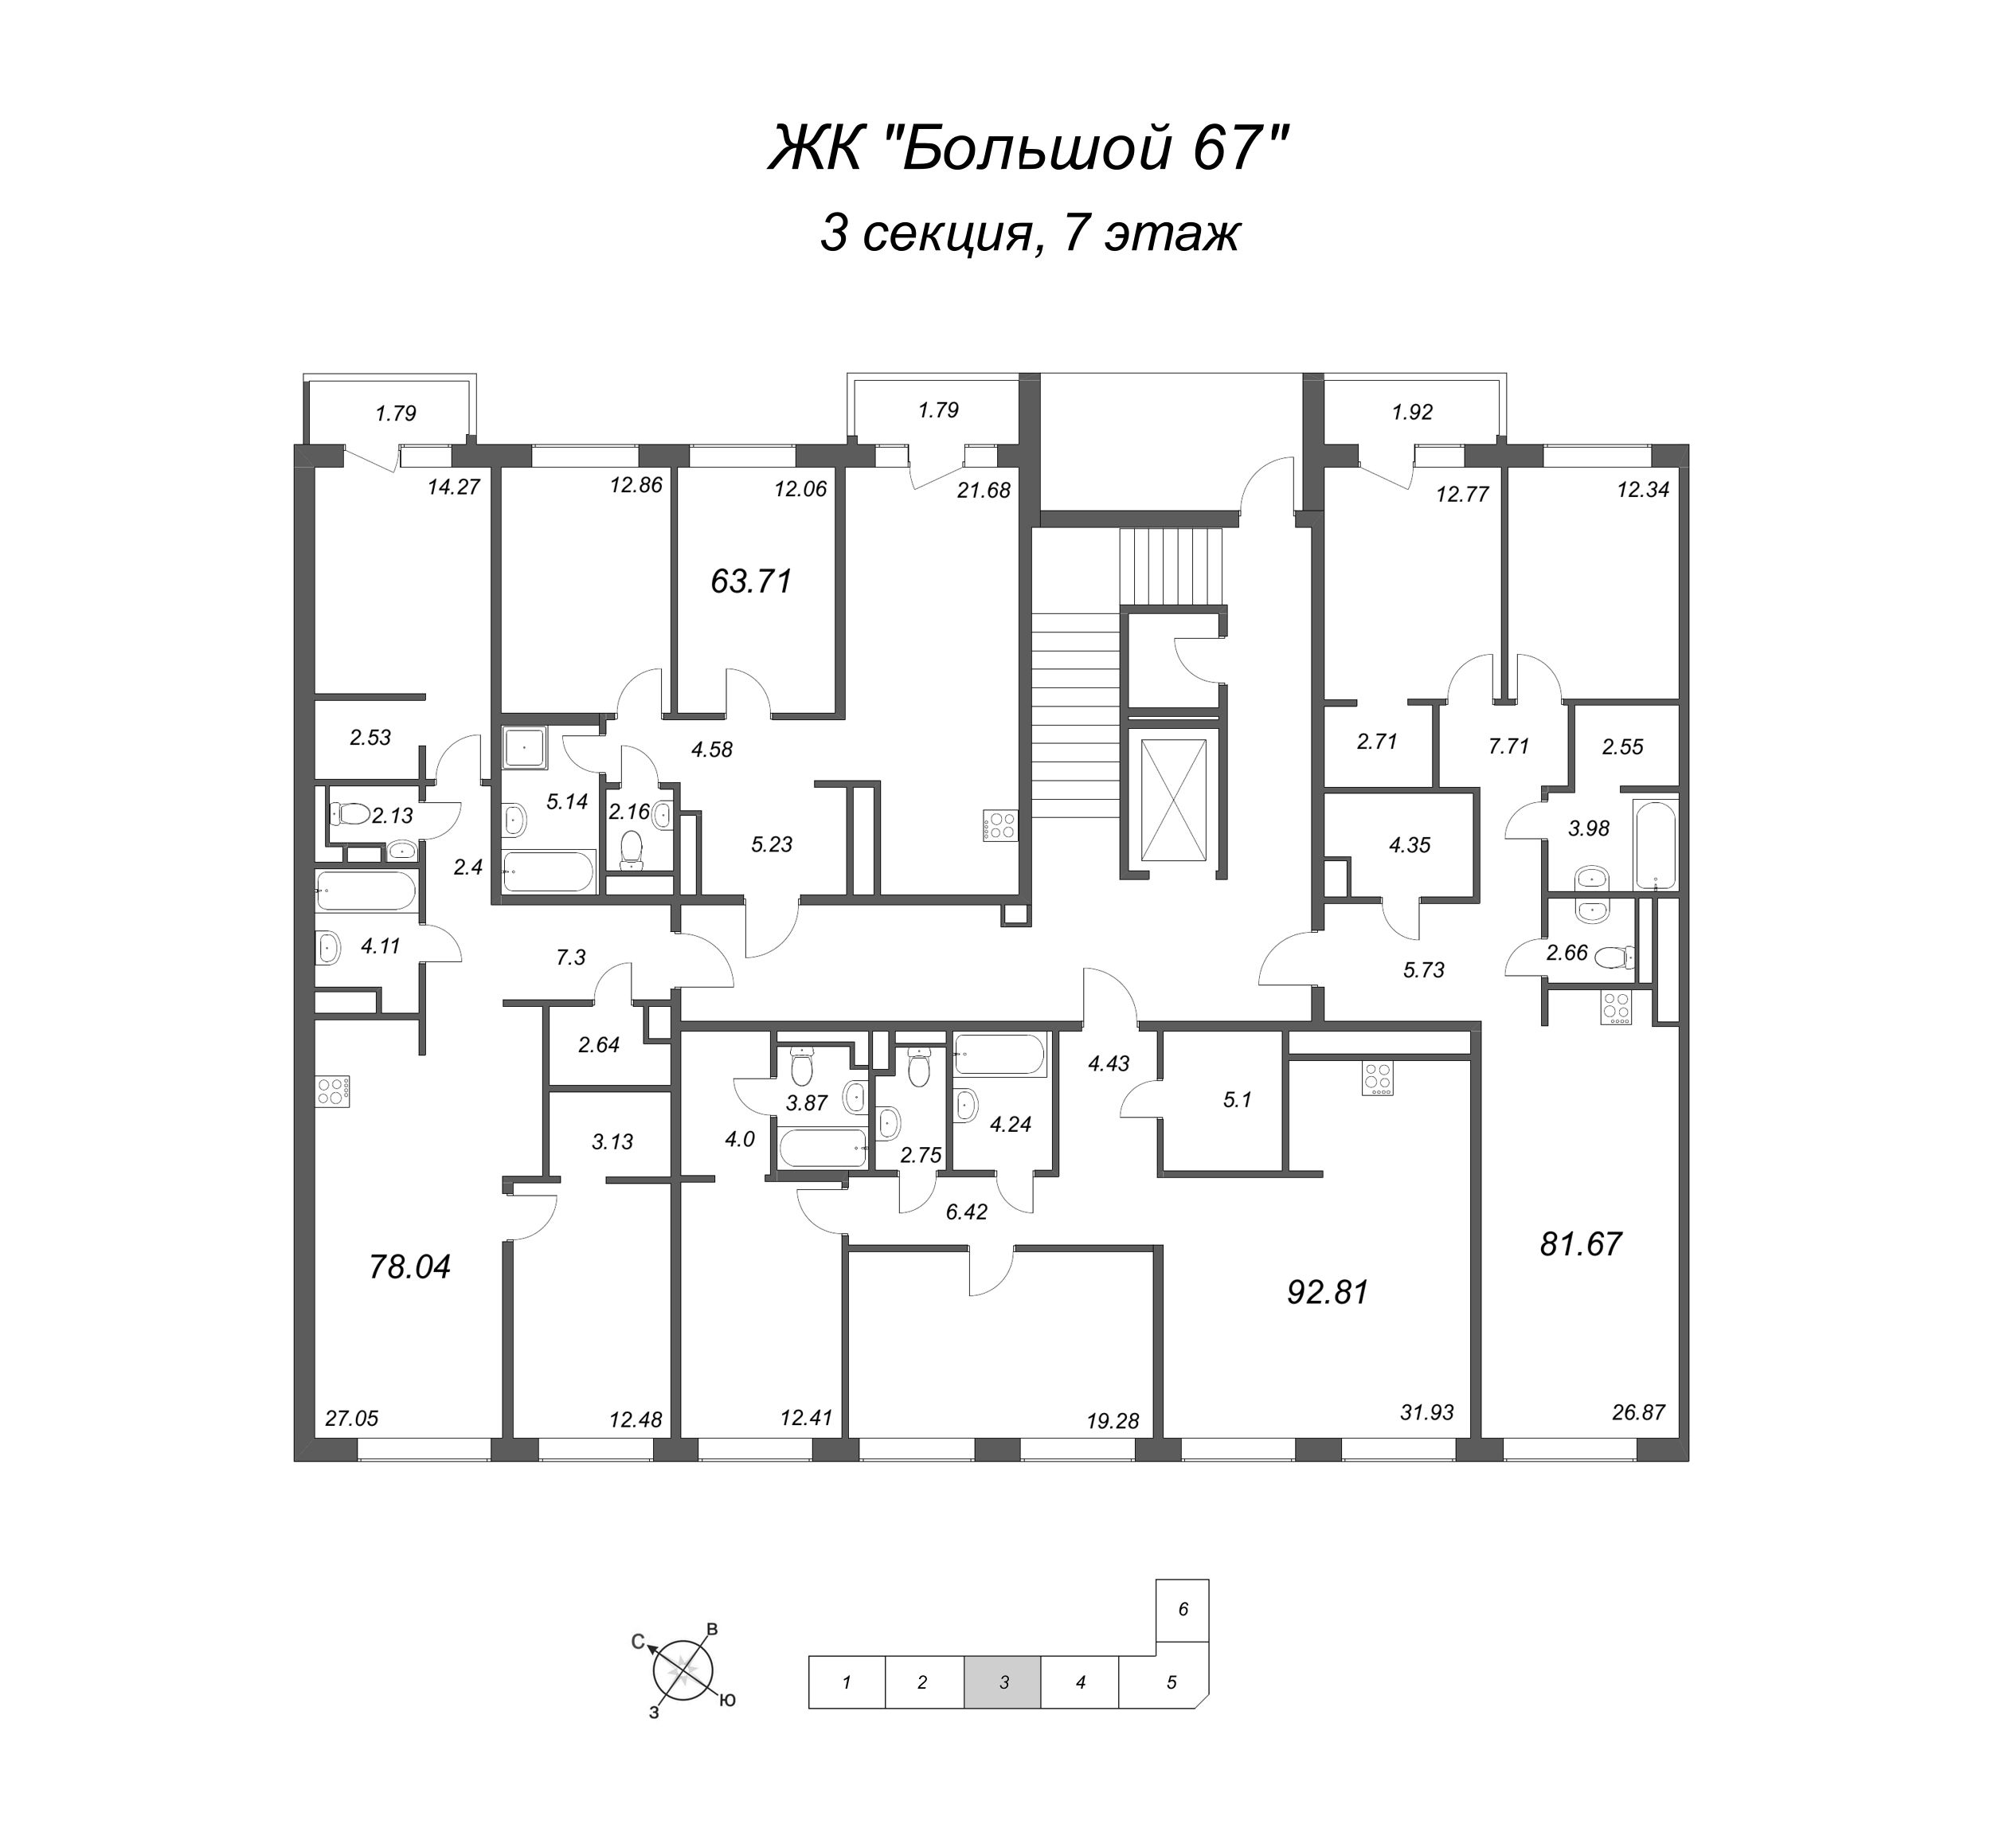 3-комнатная (Евро) квартира, 78.04 м² в ЖК "Большой, 67" - планировка этажа